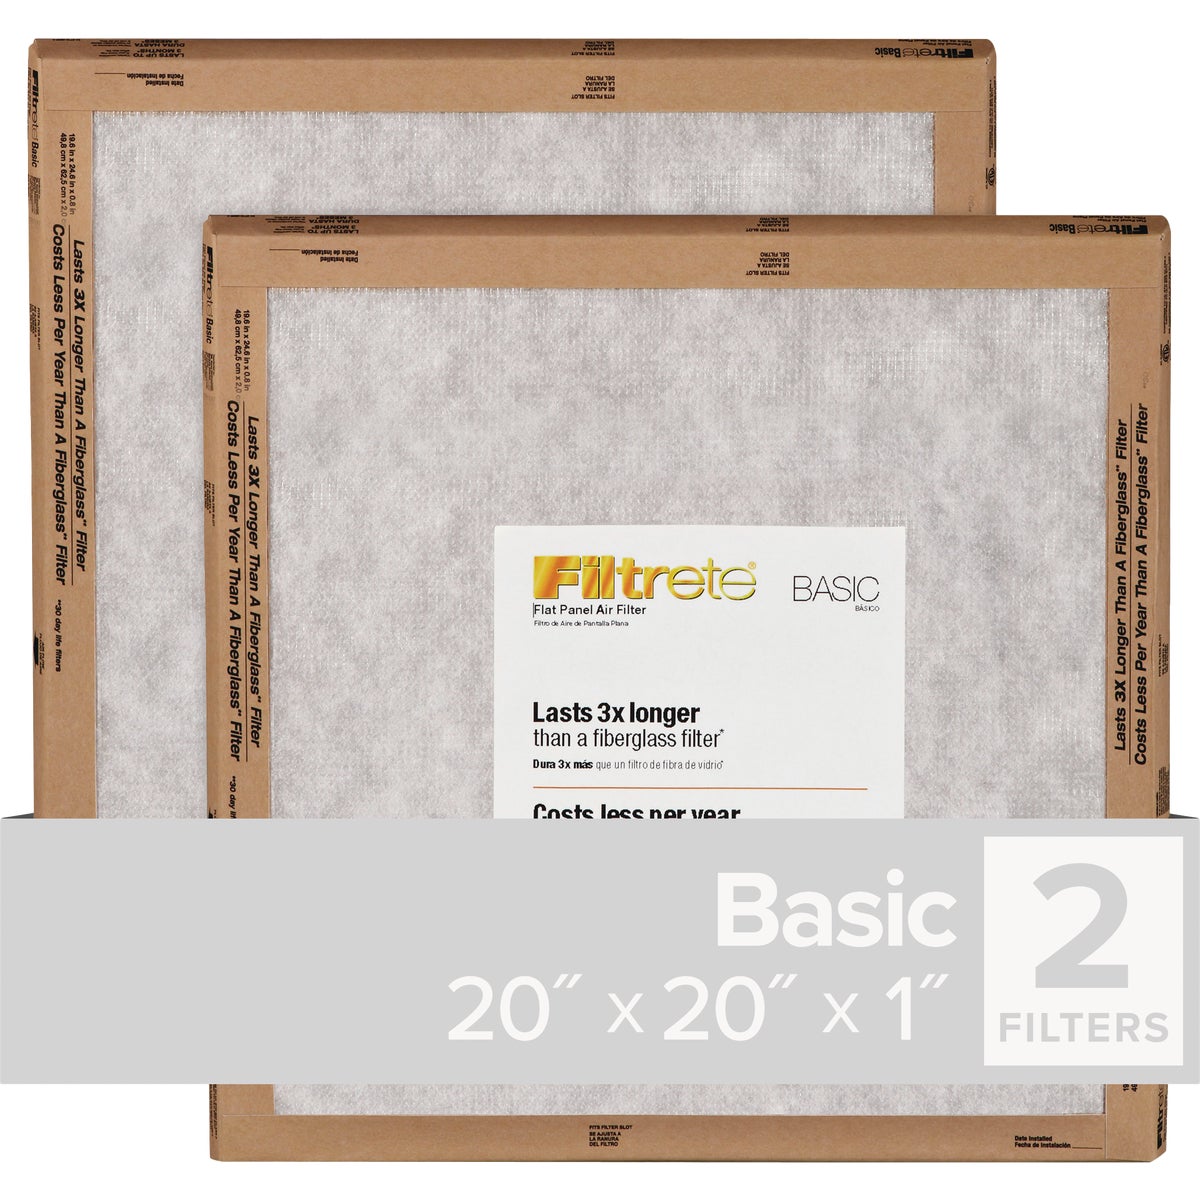 Filtrete 20 In. x 20 In. x 1 In. Basic MPR Flat Panel Furnance Filter, (2-Pack)